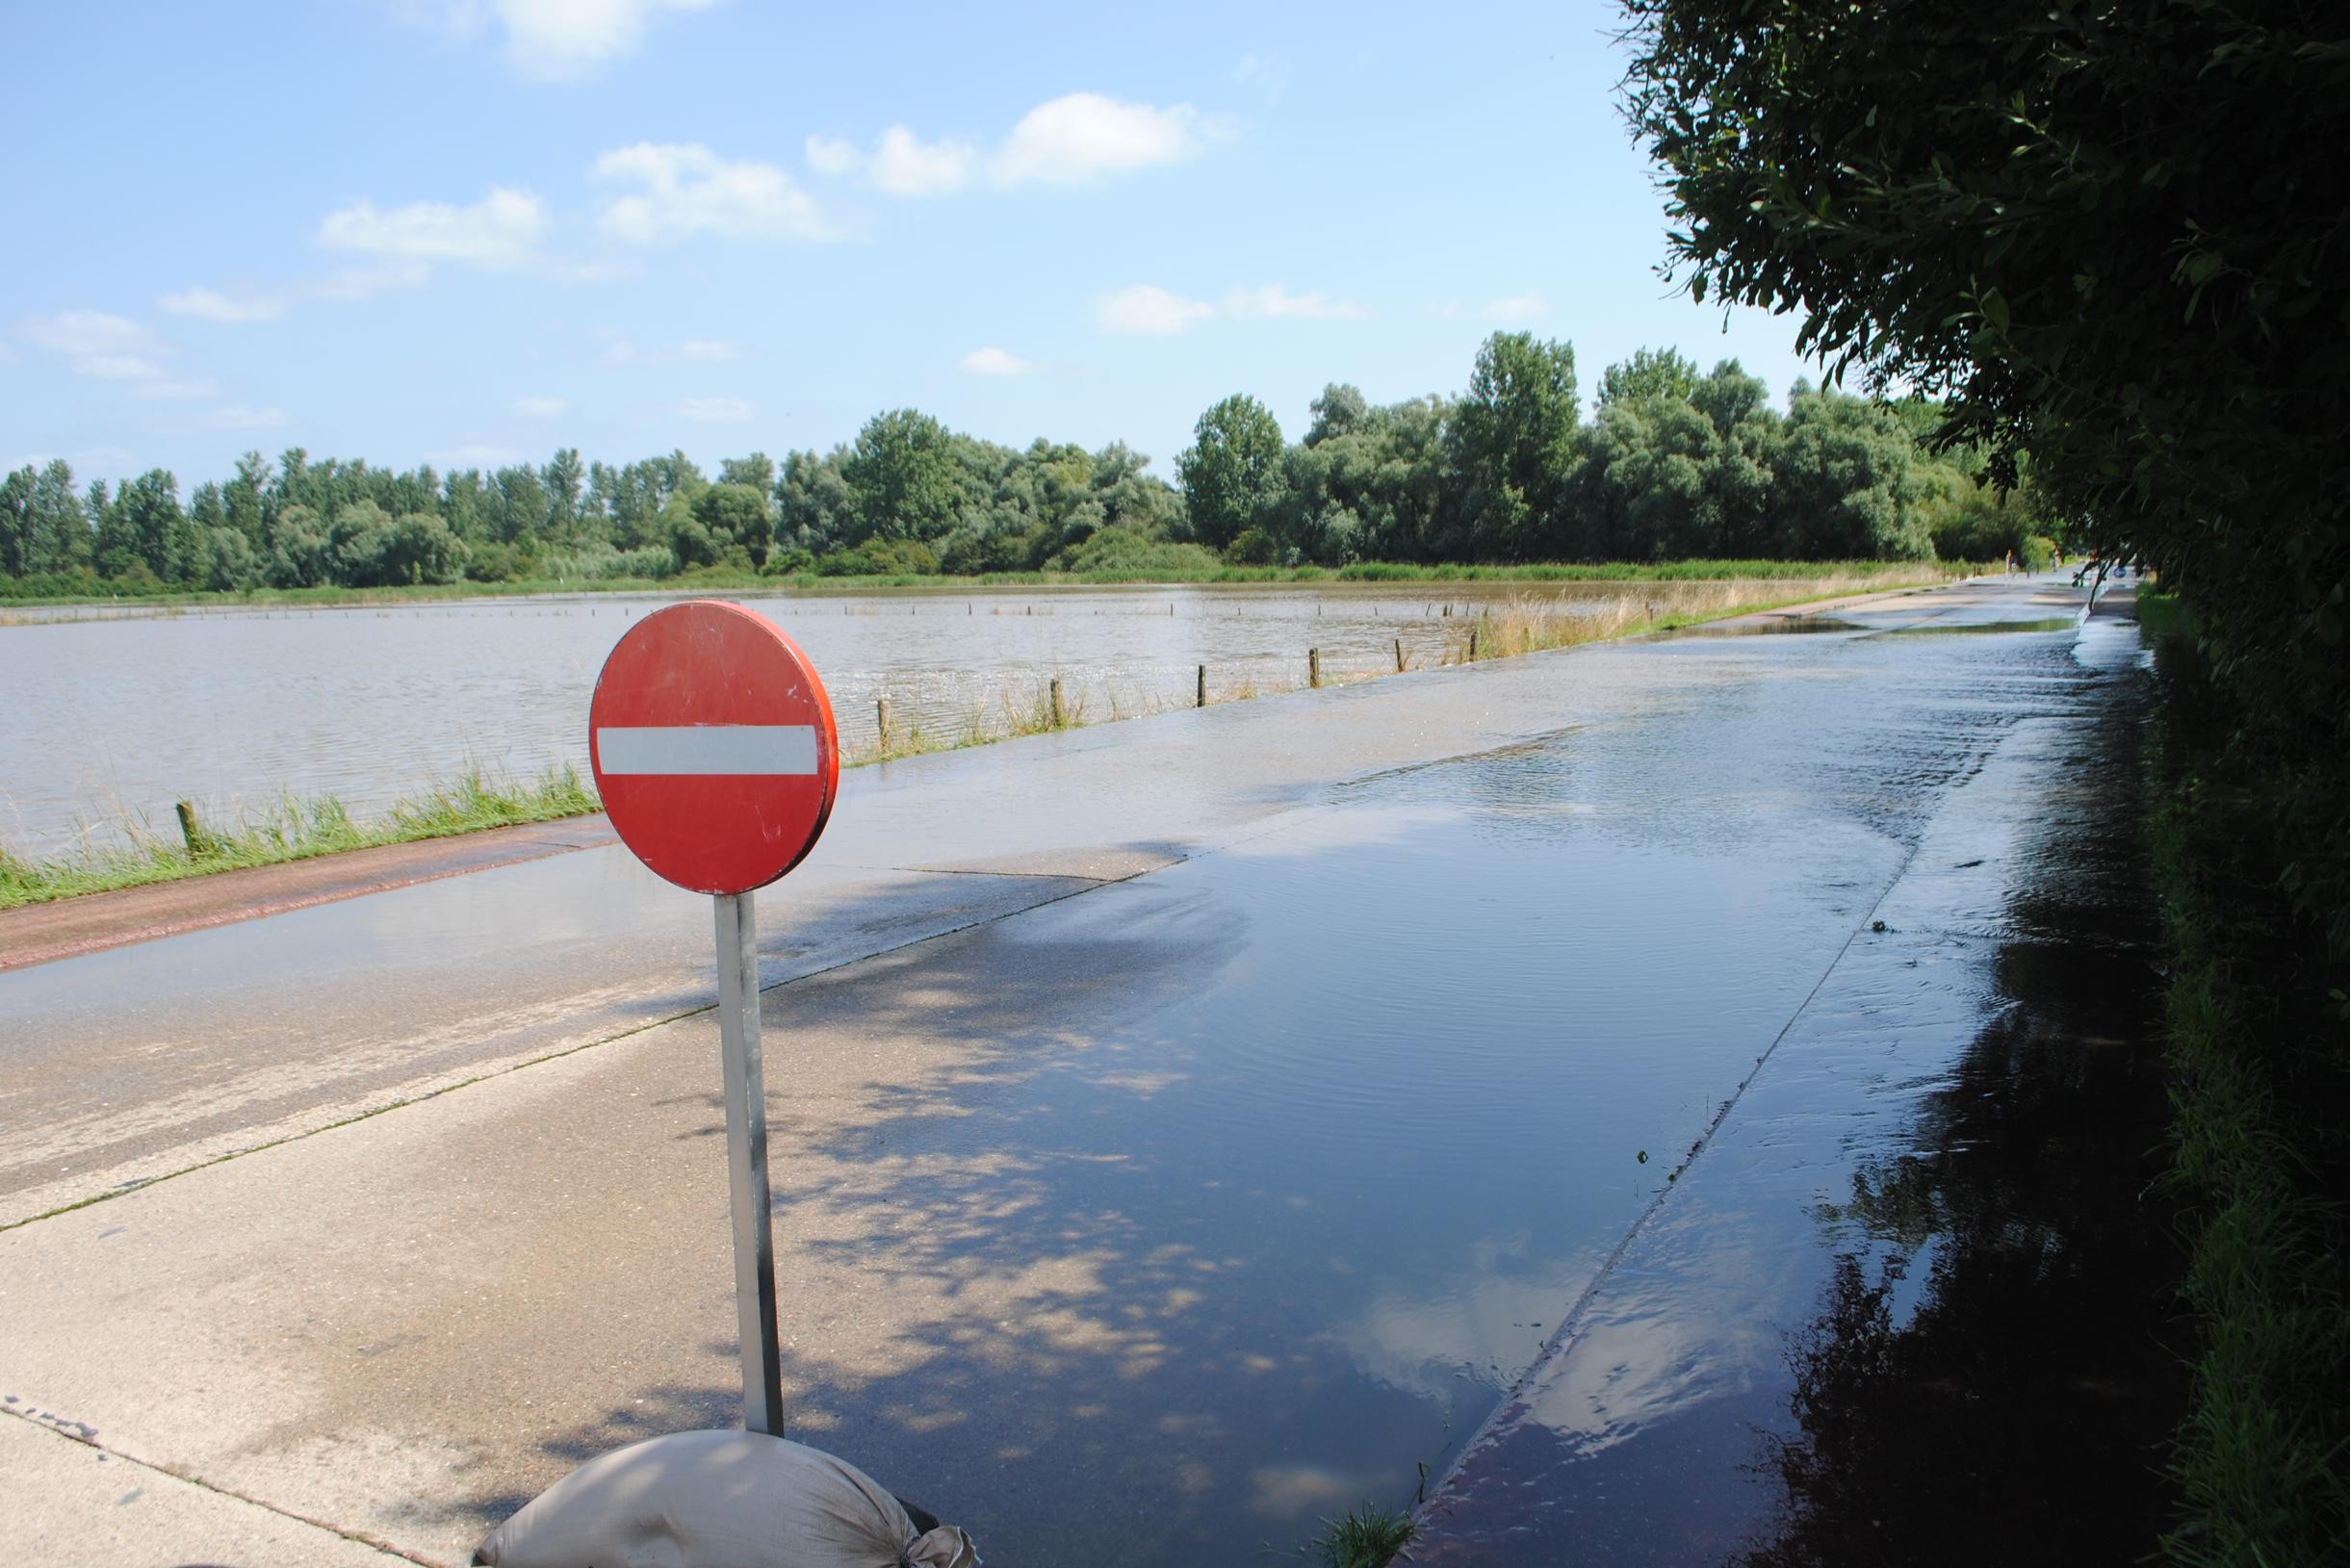 Wateroverlast juli 2021 erkend als ramp